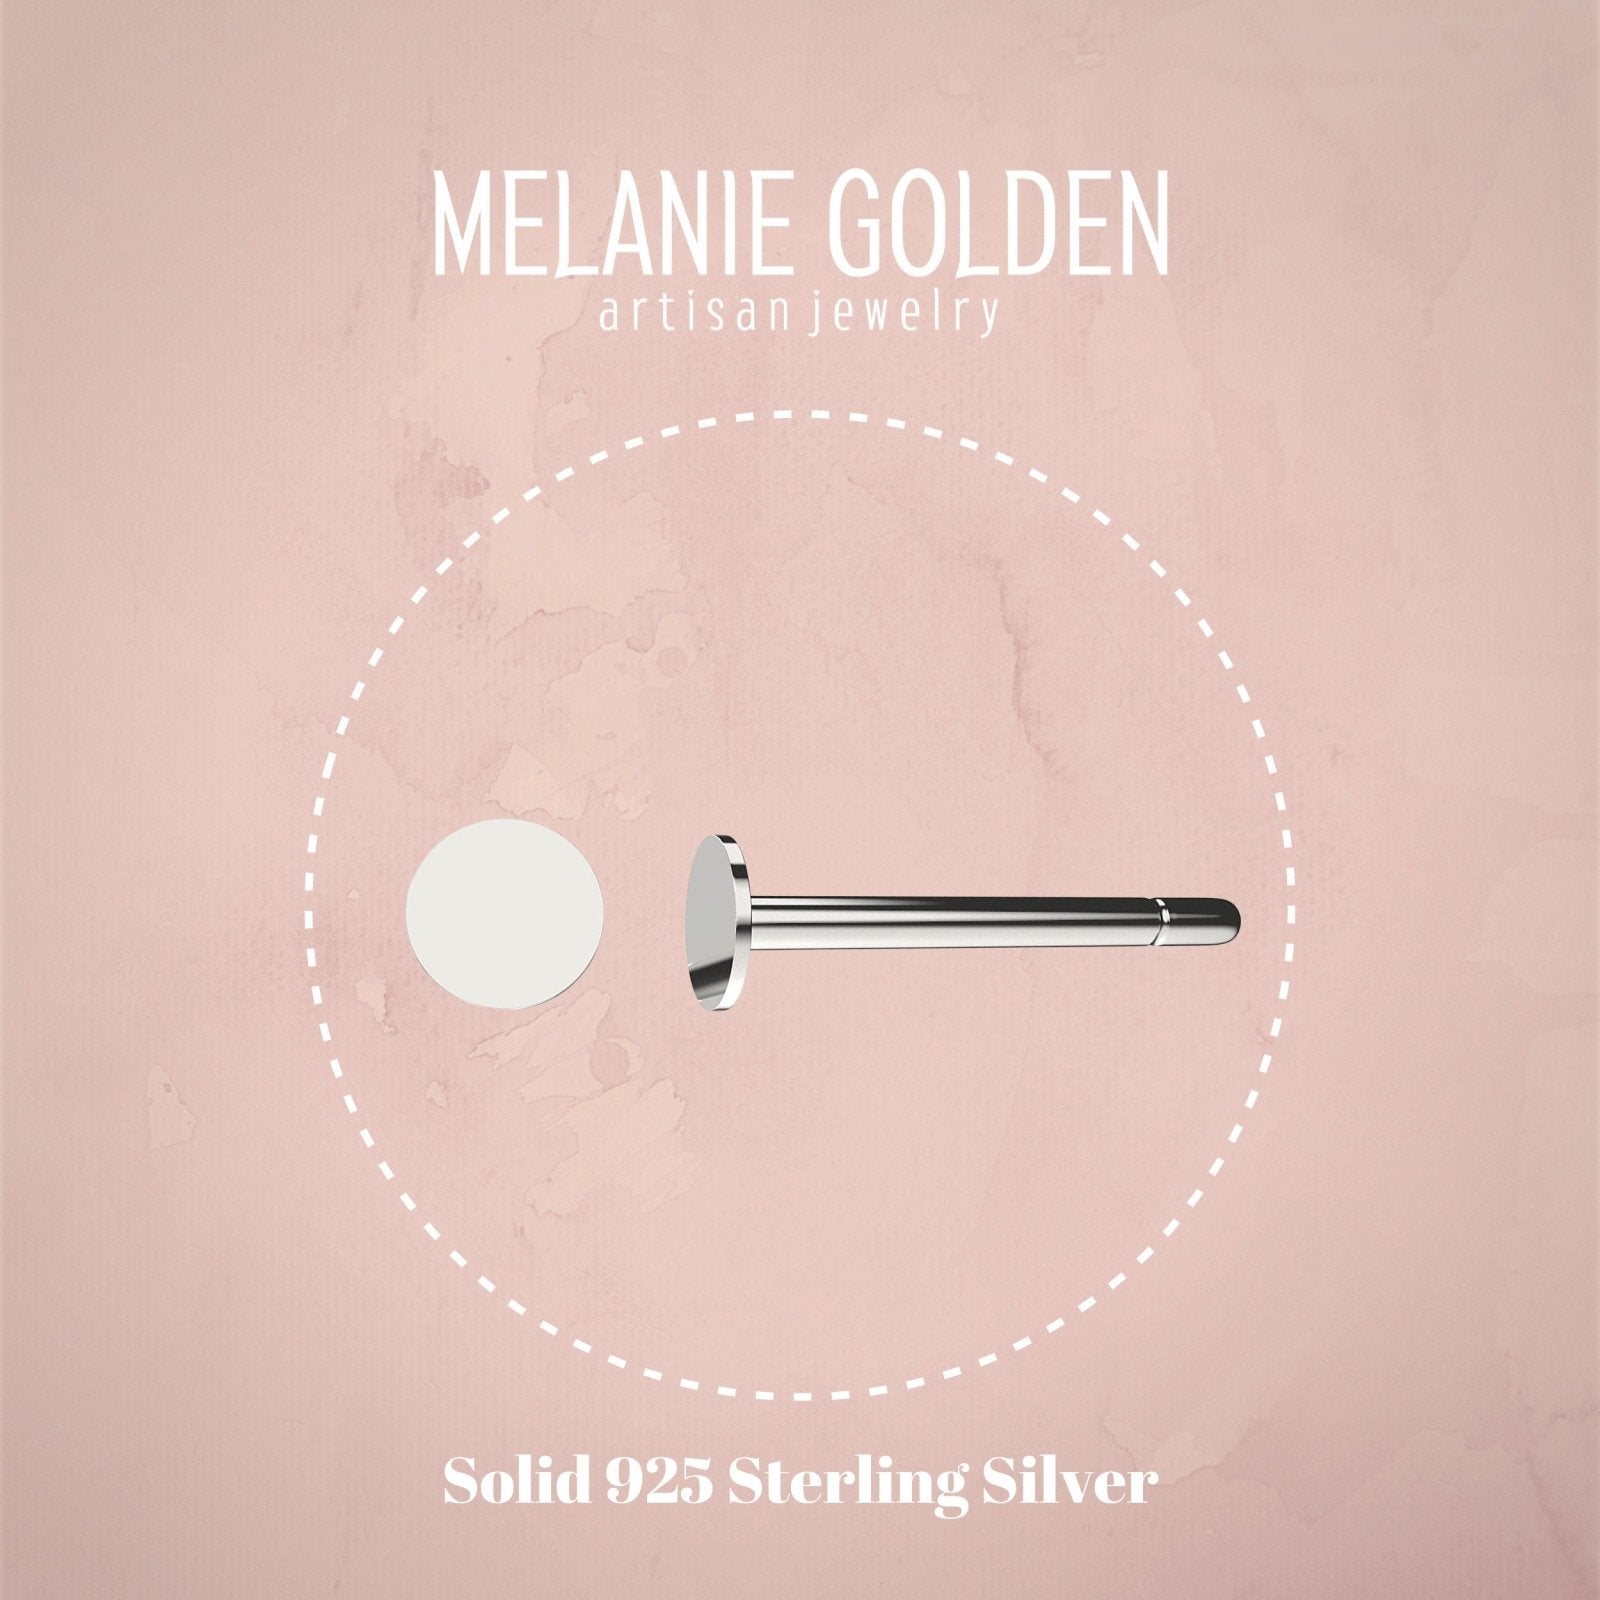 2mm Dot Disc Stud Earrings - Melanie Golden Jewelry - earrings, everyday, minimal, minimal jewelry, post earrings, silver, stud, stud earrings